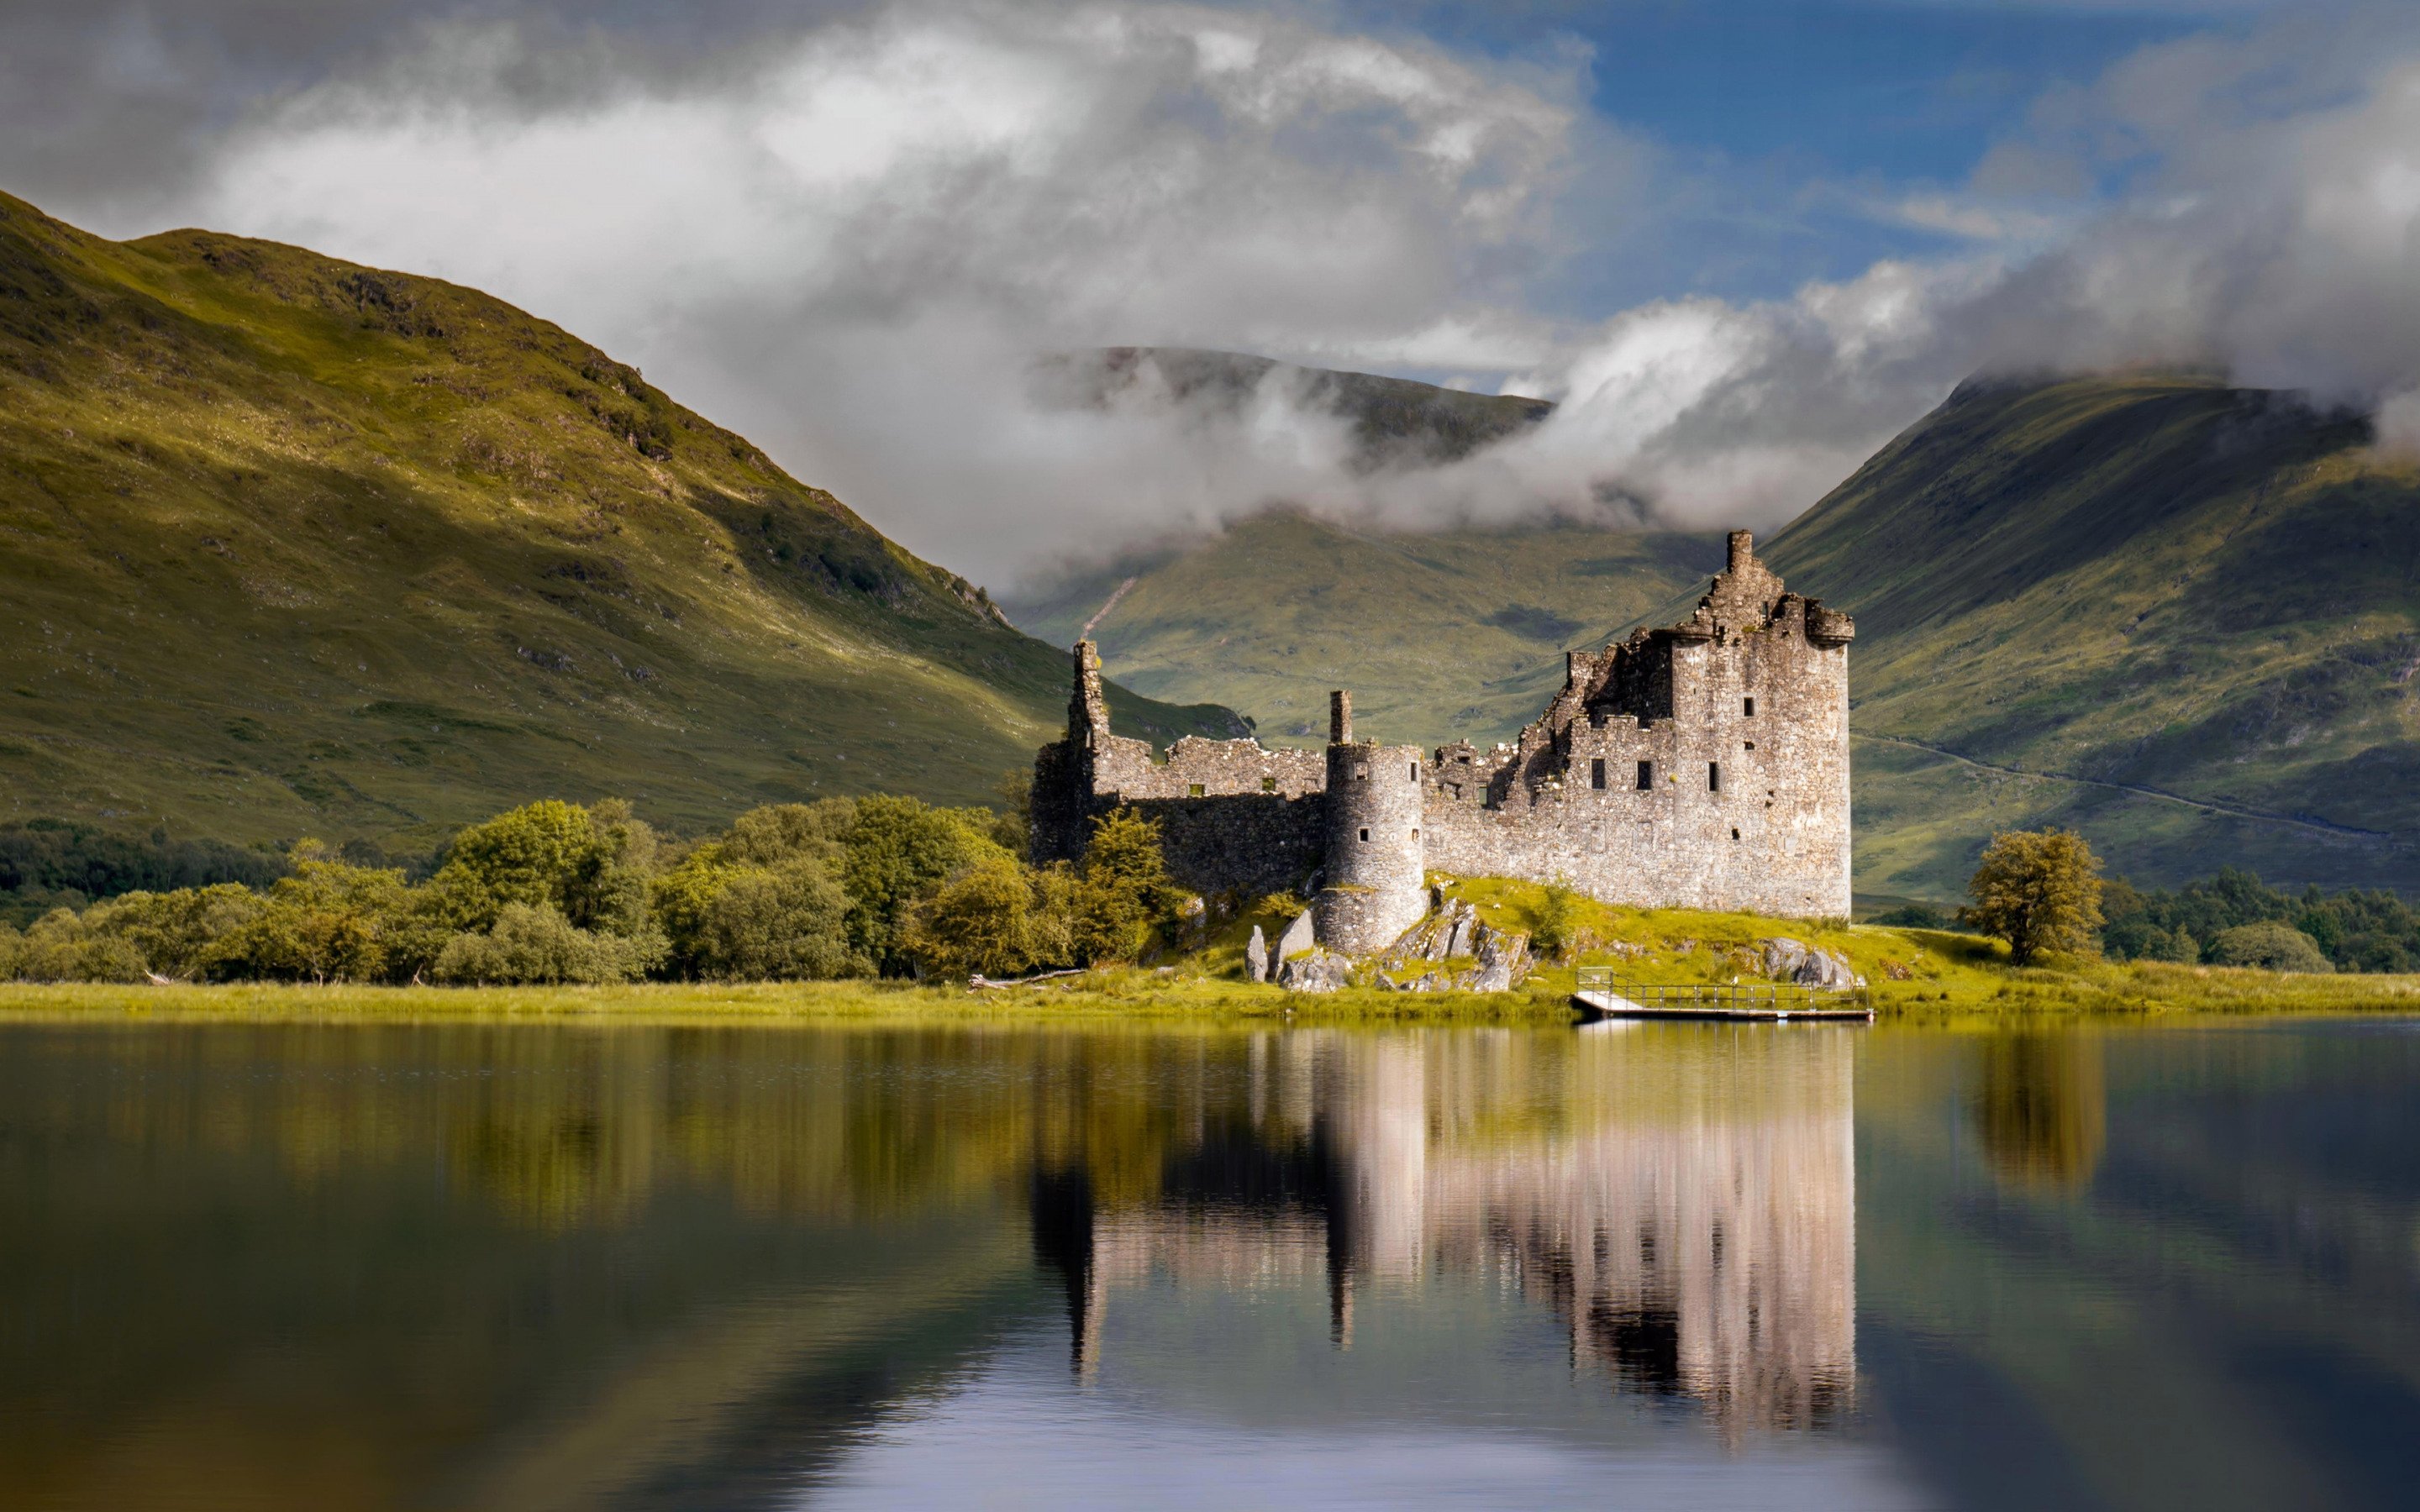 Scotland is beautiful. Замок Килхурн, Шотландия. Замок Эйлен-Донан Шотландия. Замок Эйлен-Донан - Нагорье, Шотландия. Кирримьюр Шотландия.